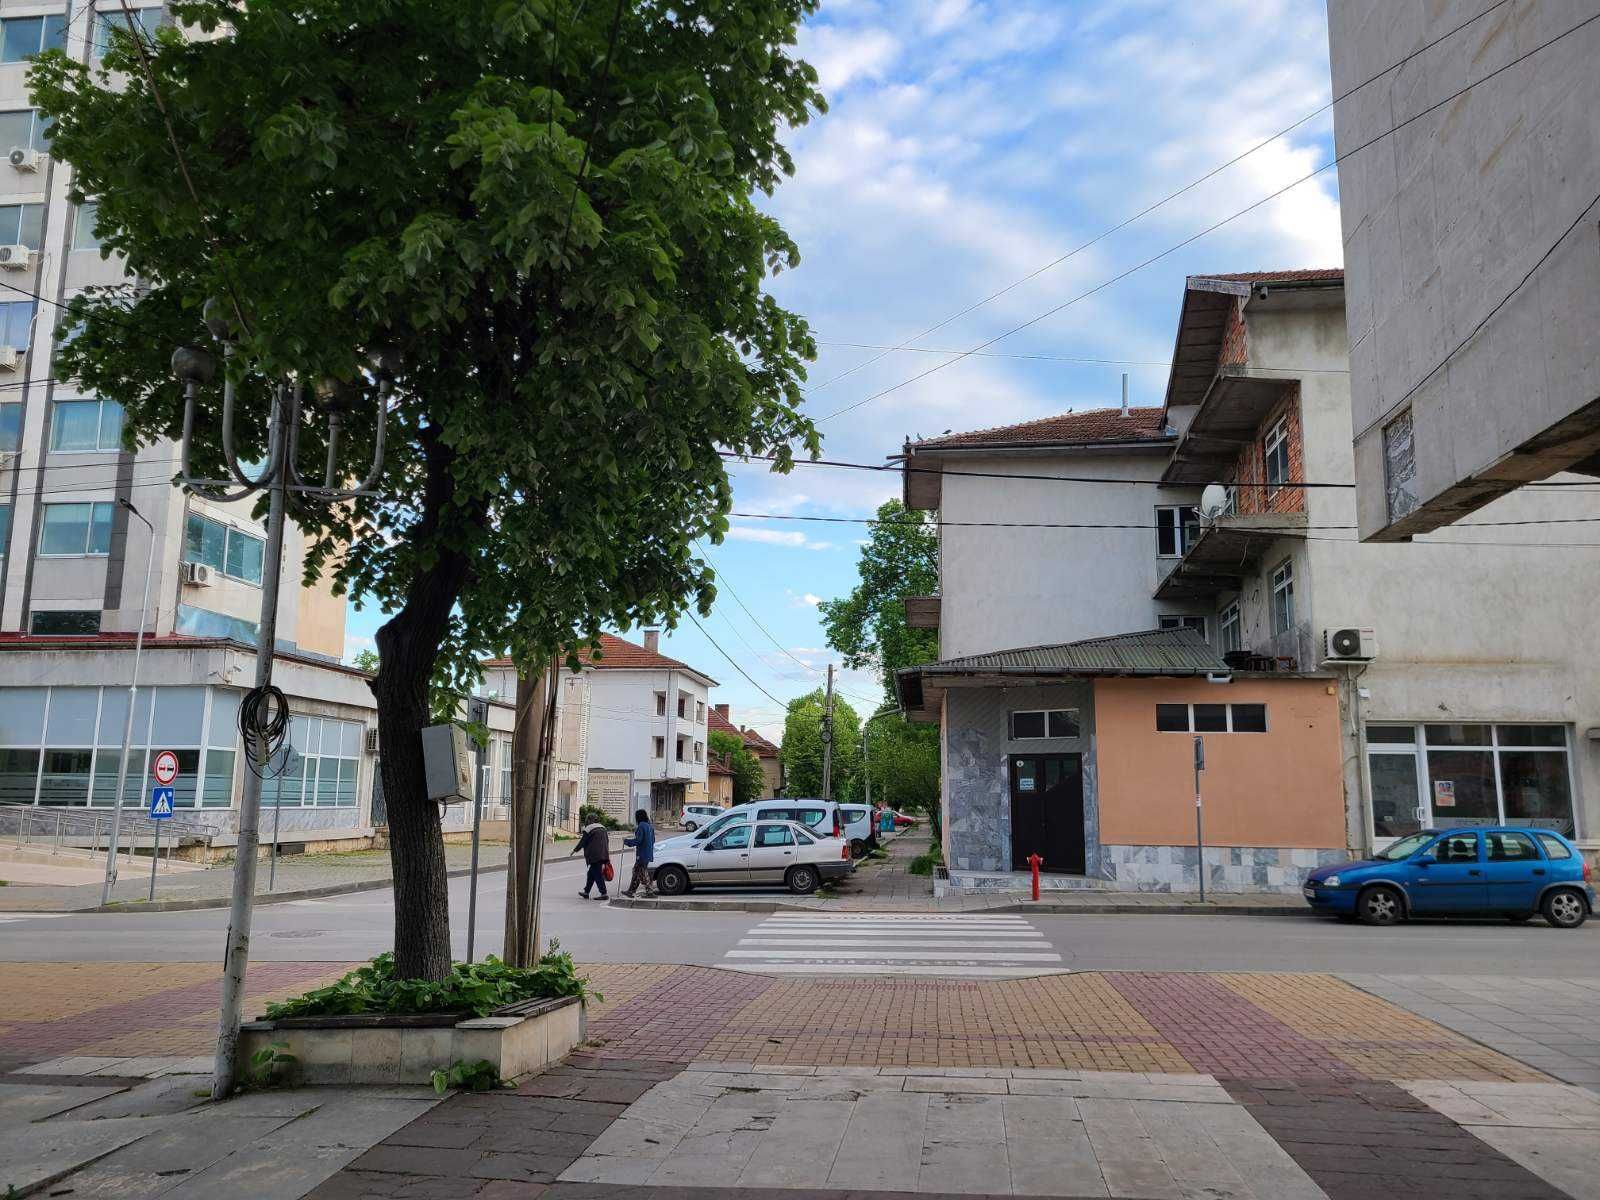 Продава се къща в центъра на Бяла Слатина срещу общината и площада